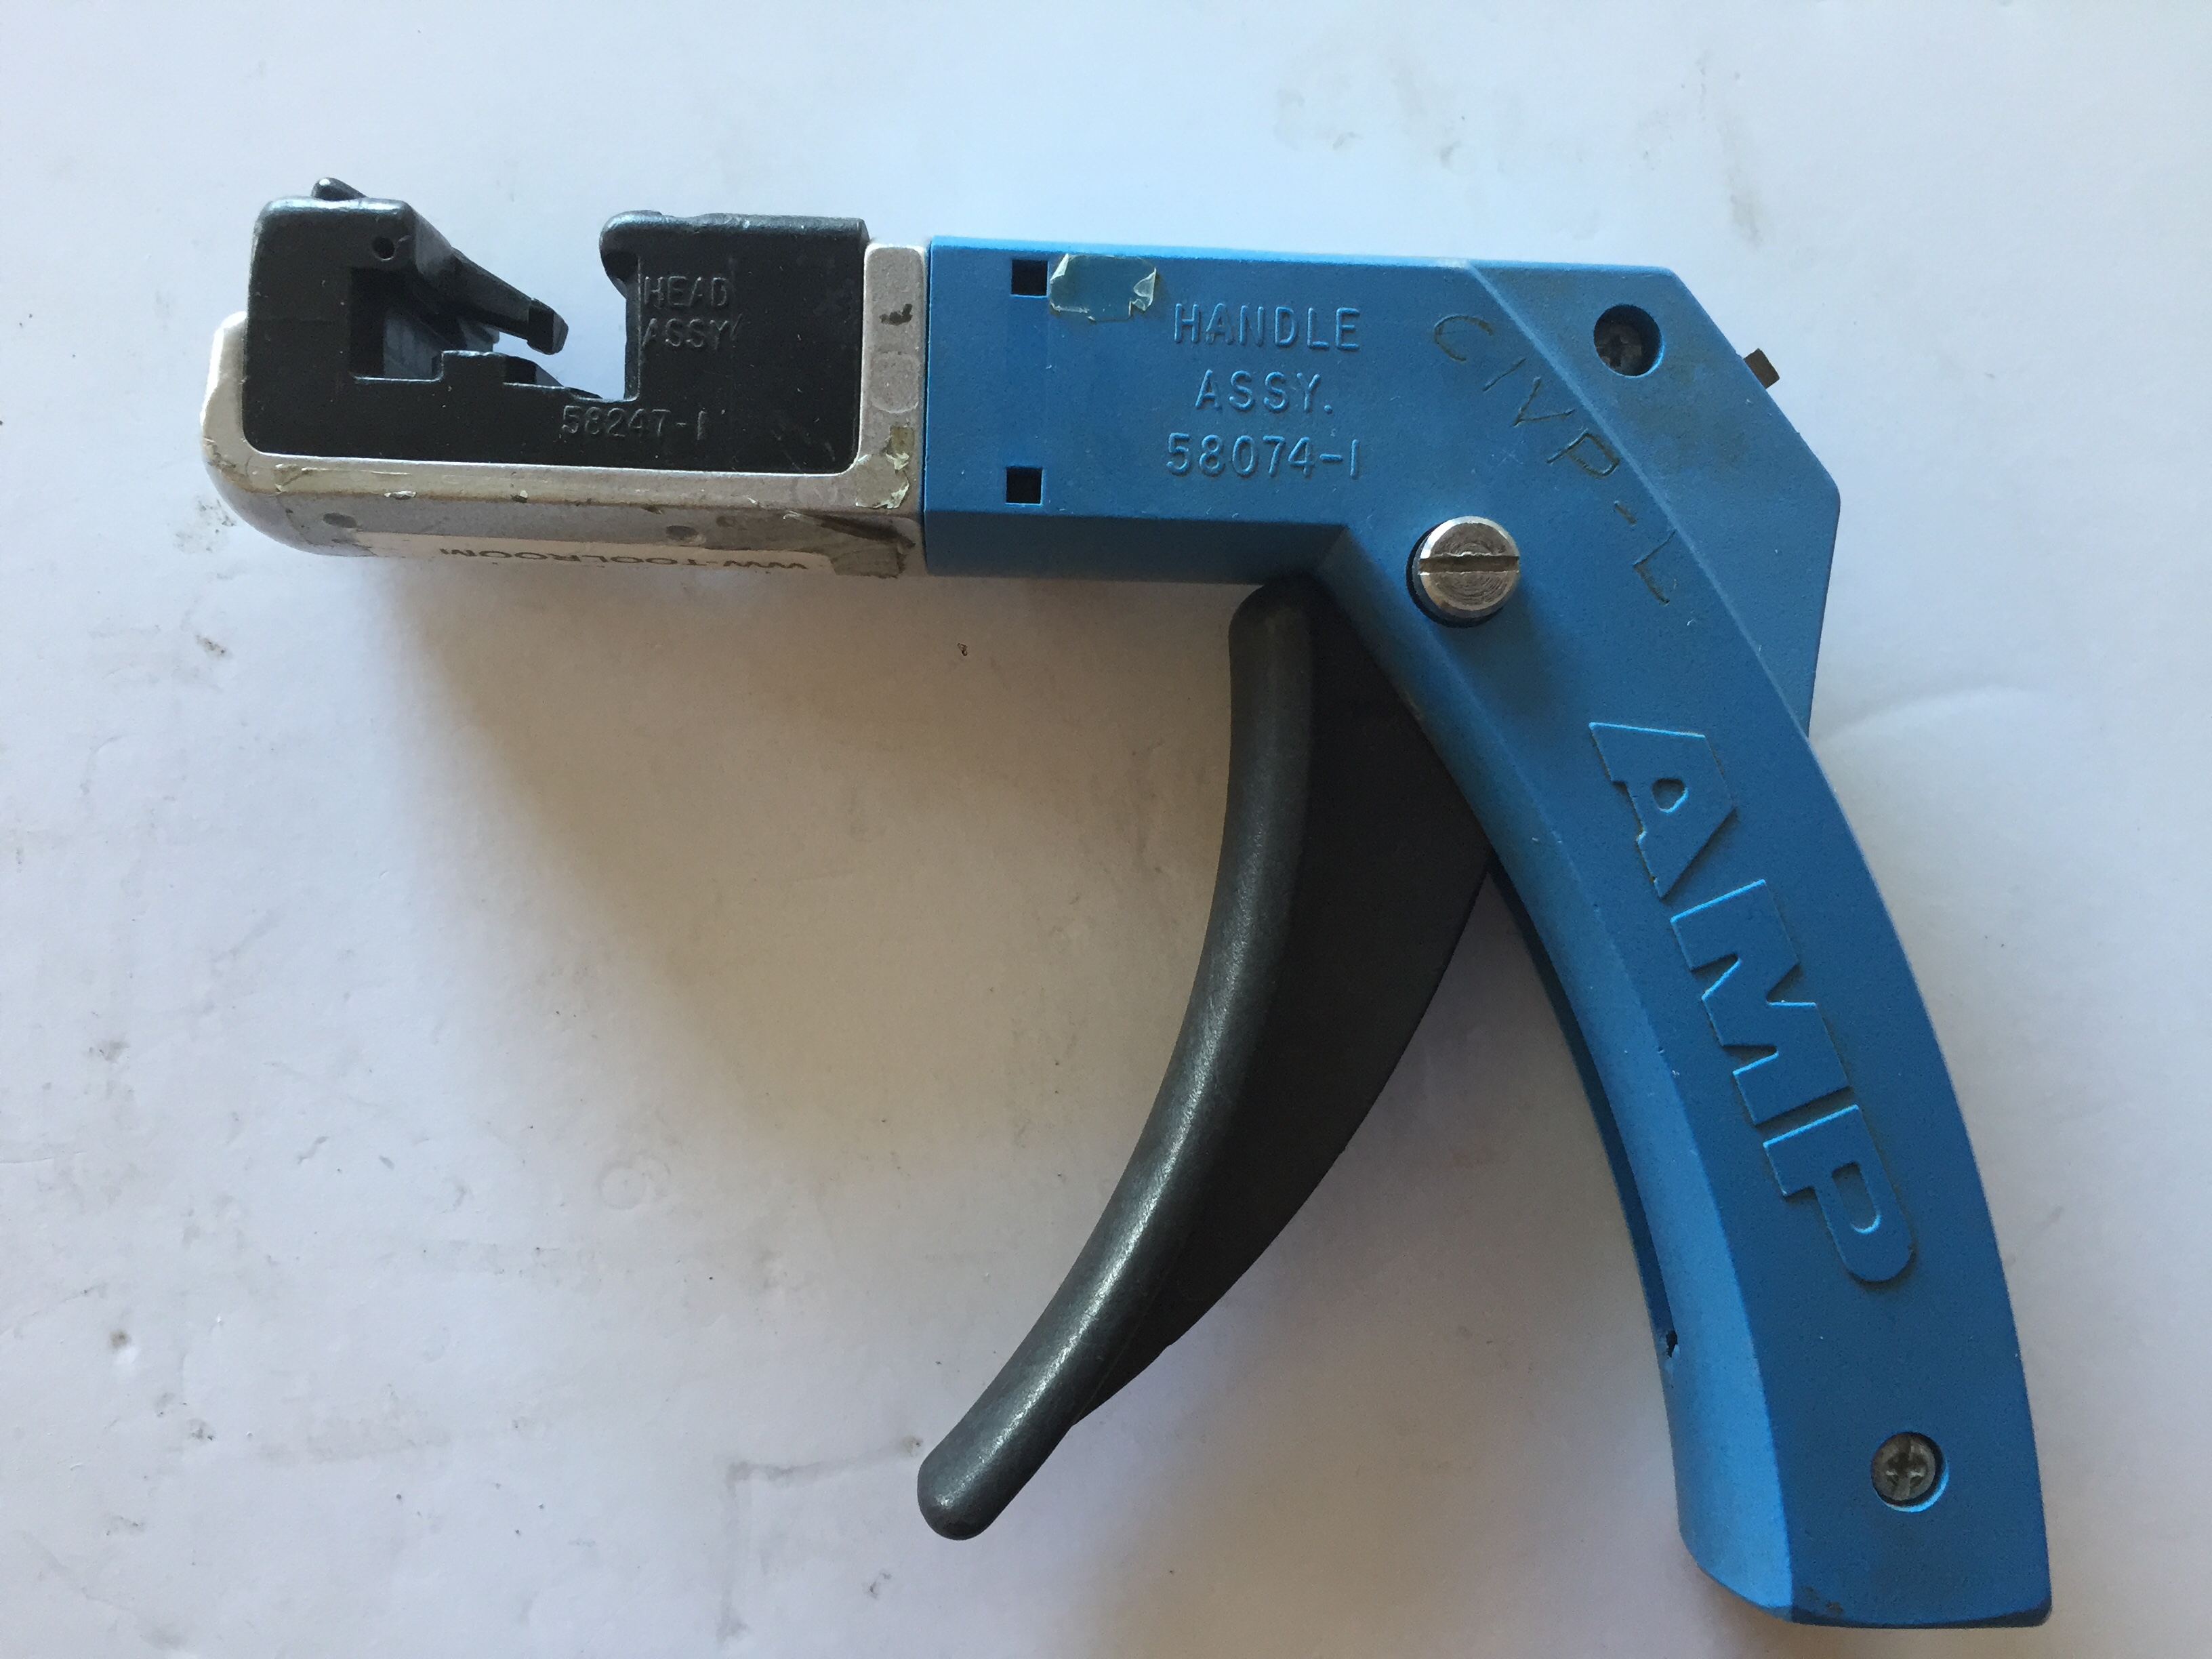 Hand Crimper AMP 58074-1 Blue Hand Crimper tyco Delphi Aptiv TE Connective